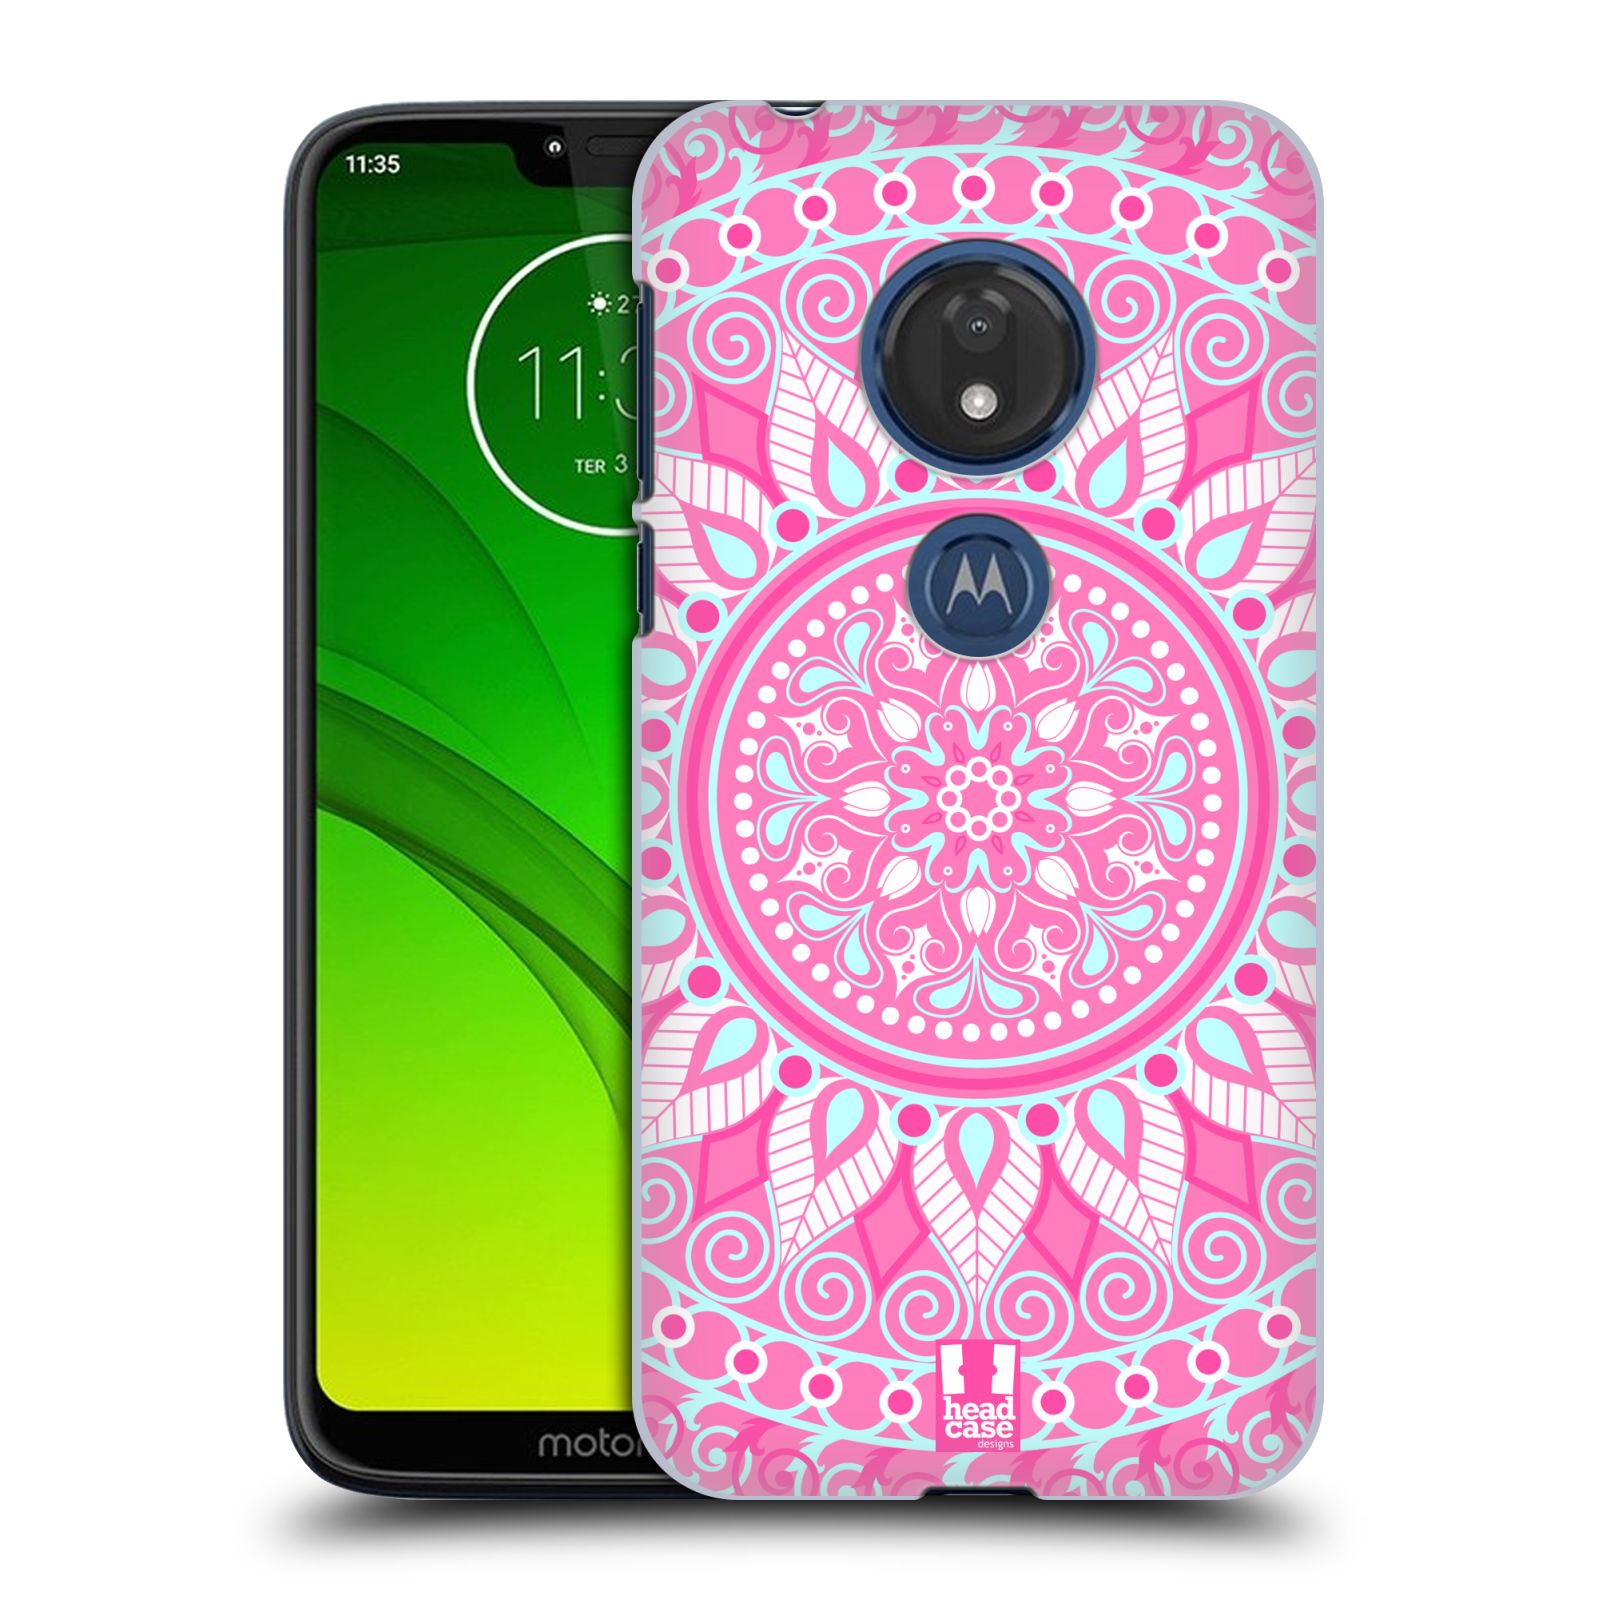 Pouzdro na mobil Motorola Moto G7 Play vzor Indie Mandala slunce barevný motiv RŮŽOVÁ